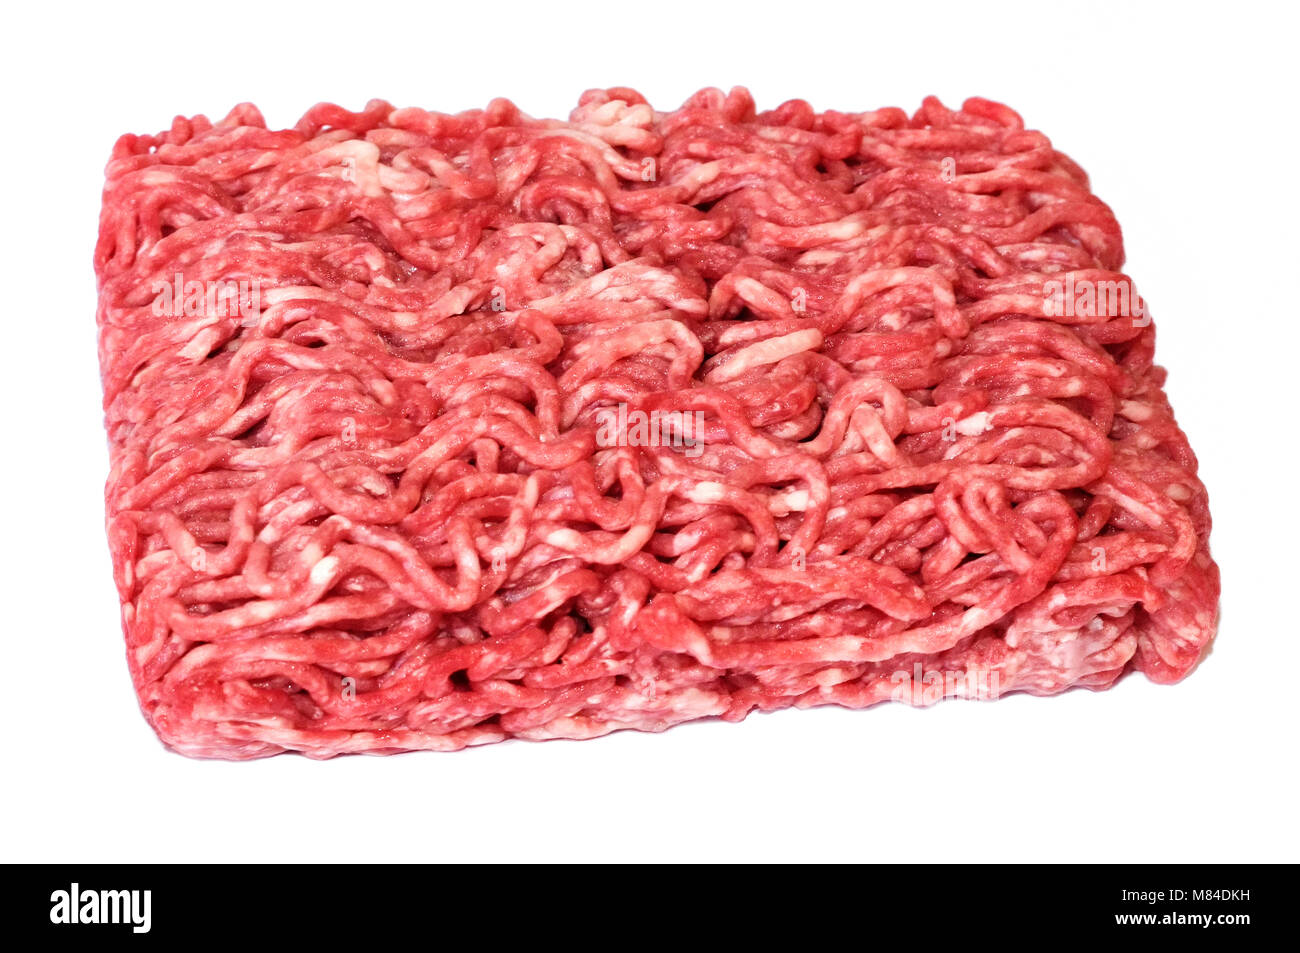 La viande hachée crue ou la viande bovine, isolé sur fond blanc. La viande fraîche, ingrédient pour la cuisson. high angle view. Banque D'Images